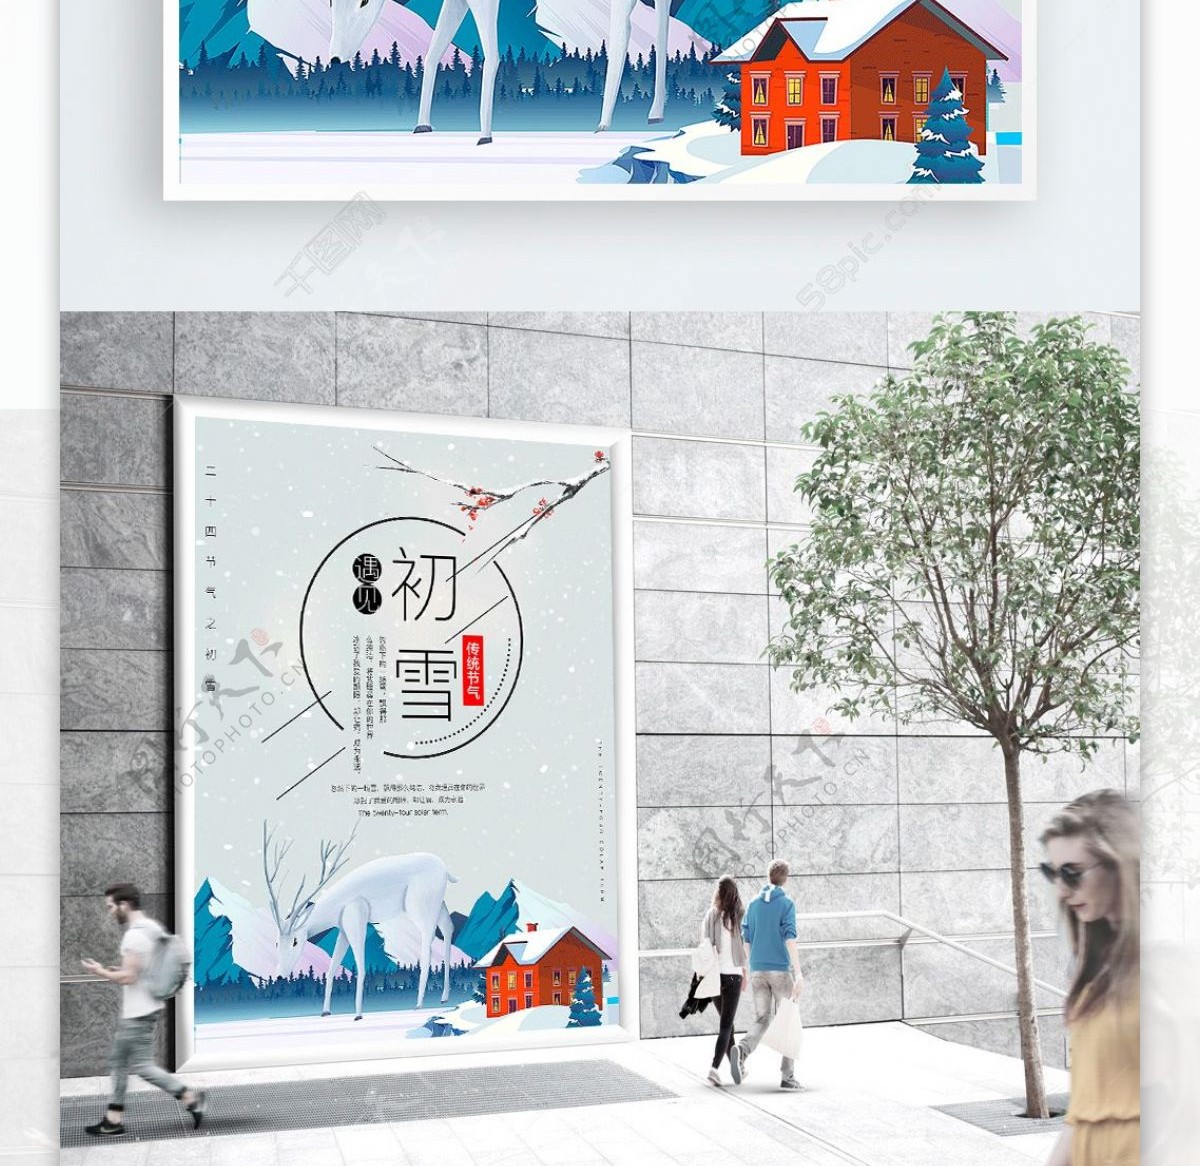 二十四节气初雪宣传海报